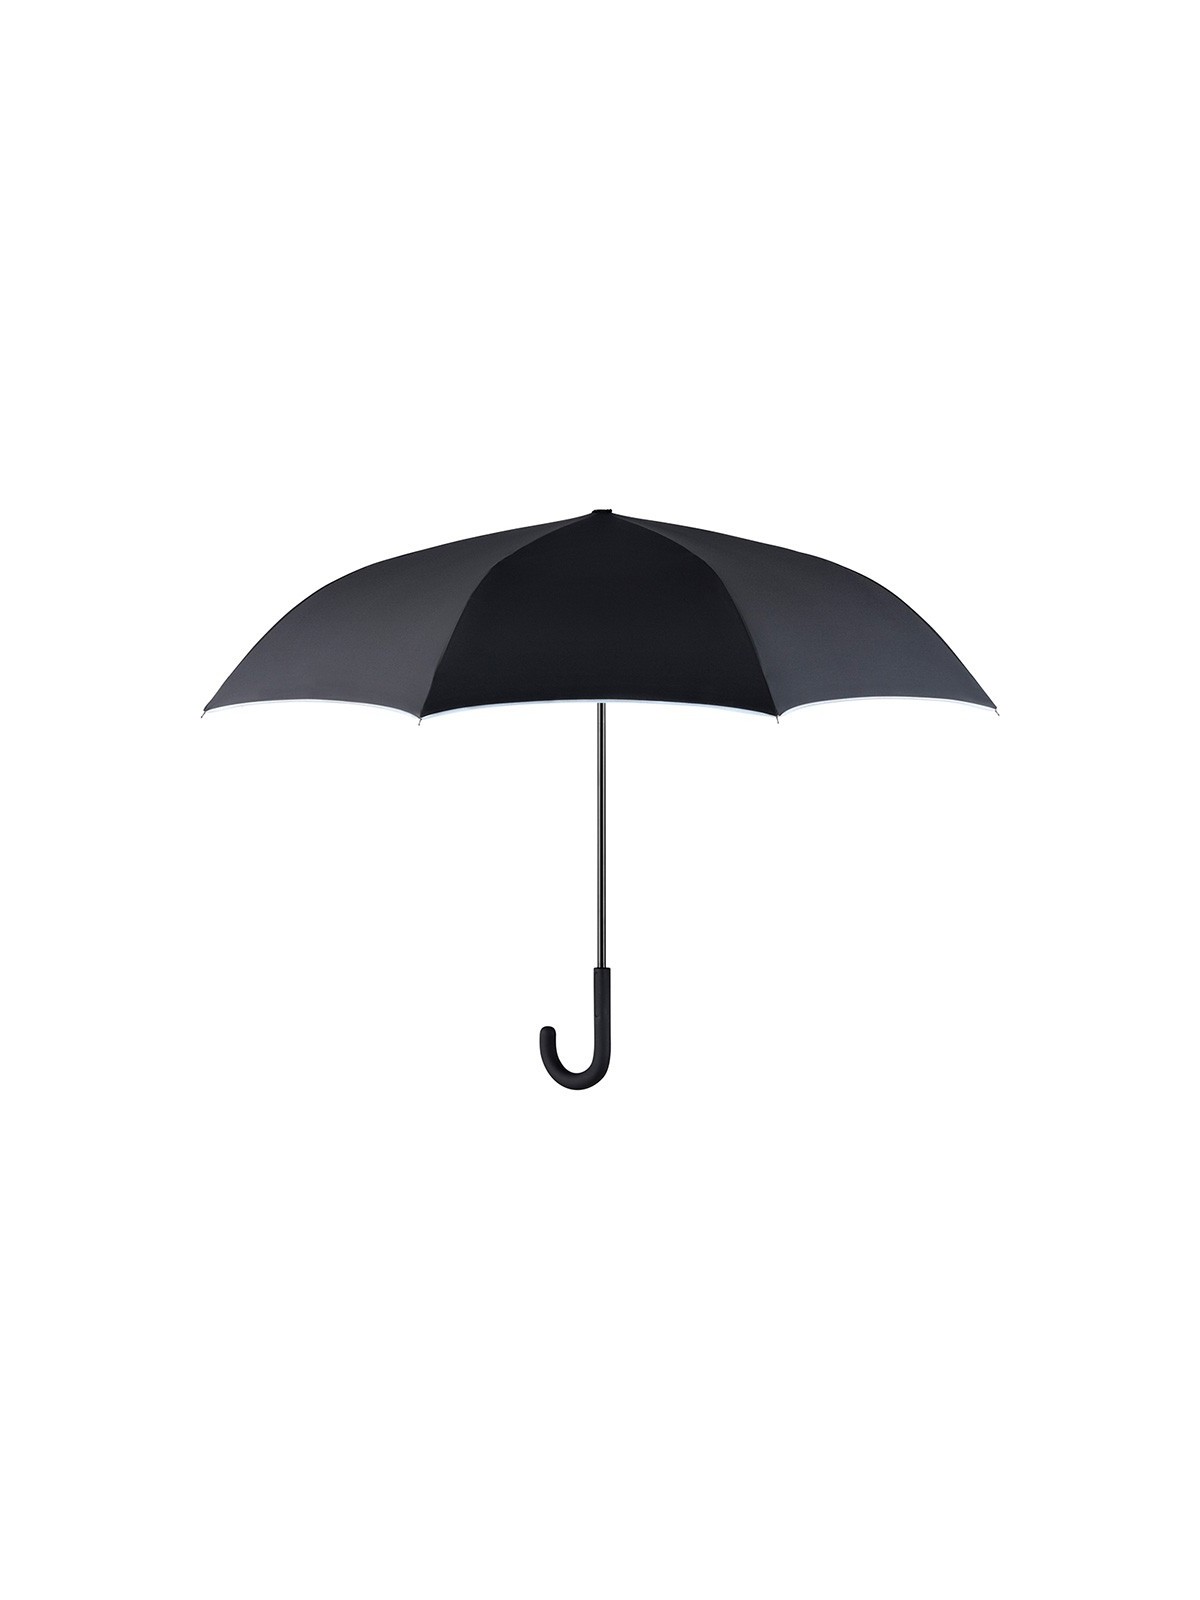 75-029 Parapluie publicitaire bi-colore inversé personnalisé